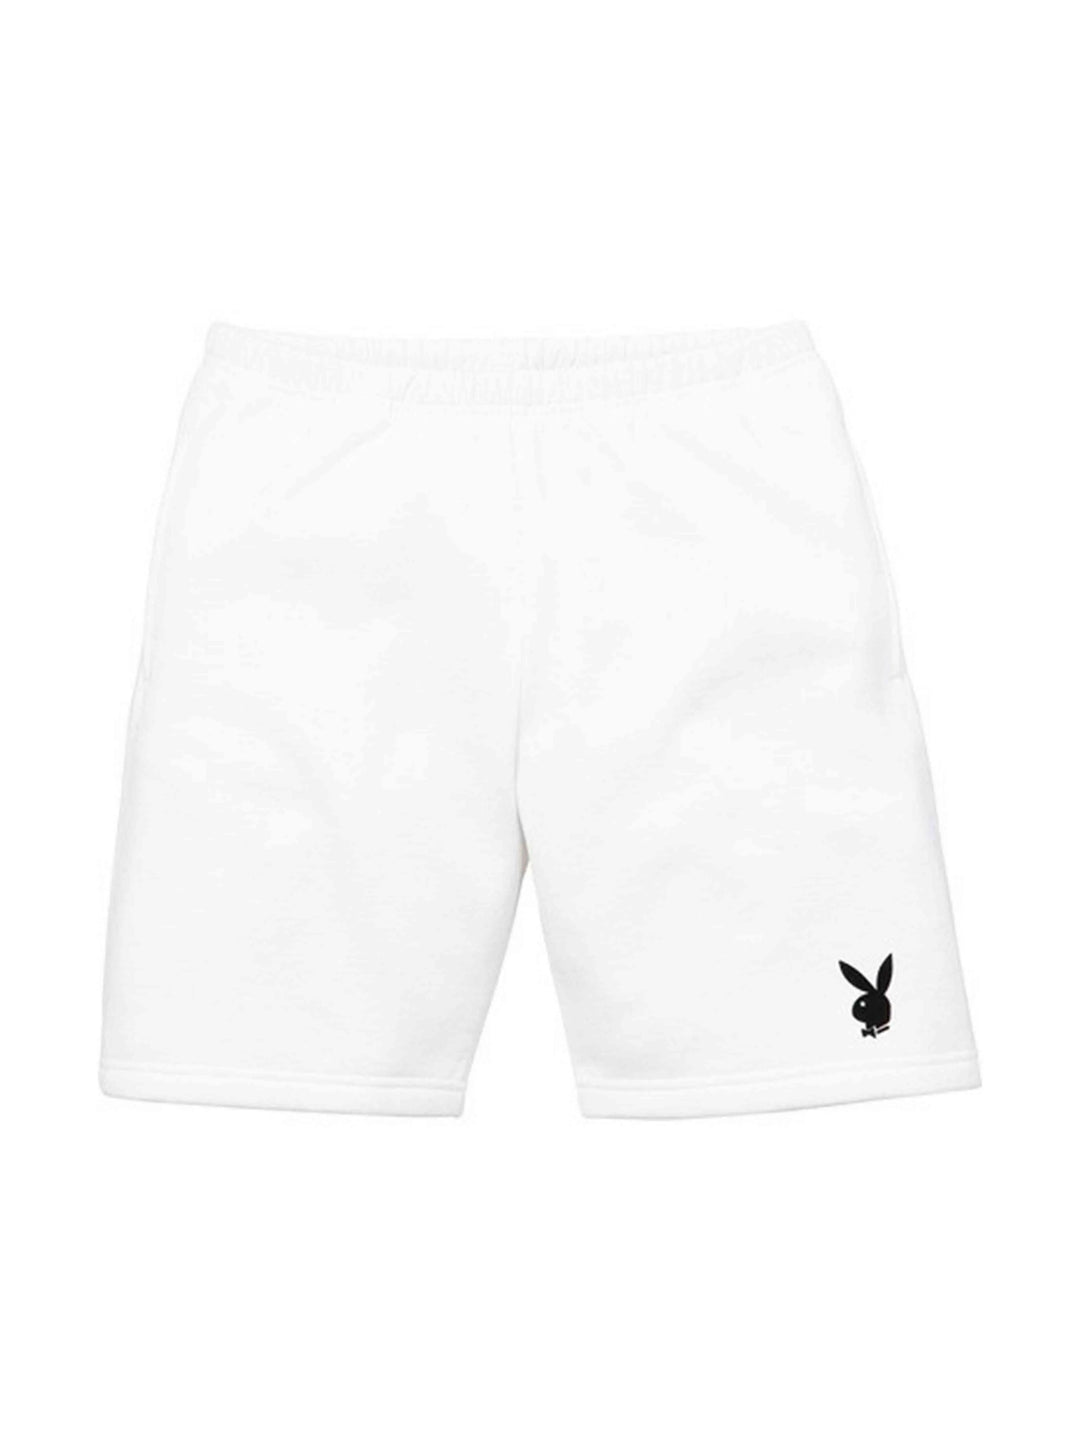 Supreme x Playboy Fleece Shorts White S Supreme